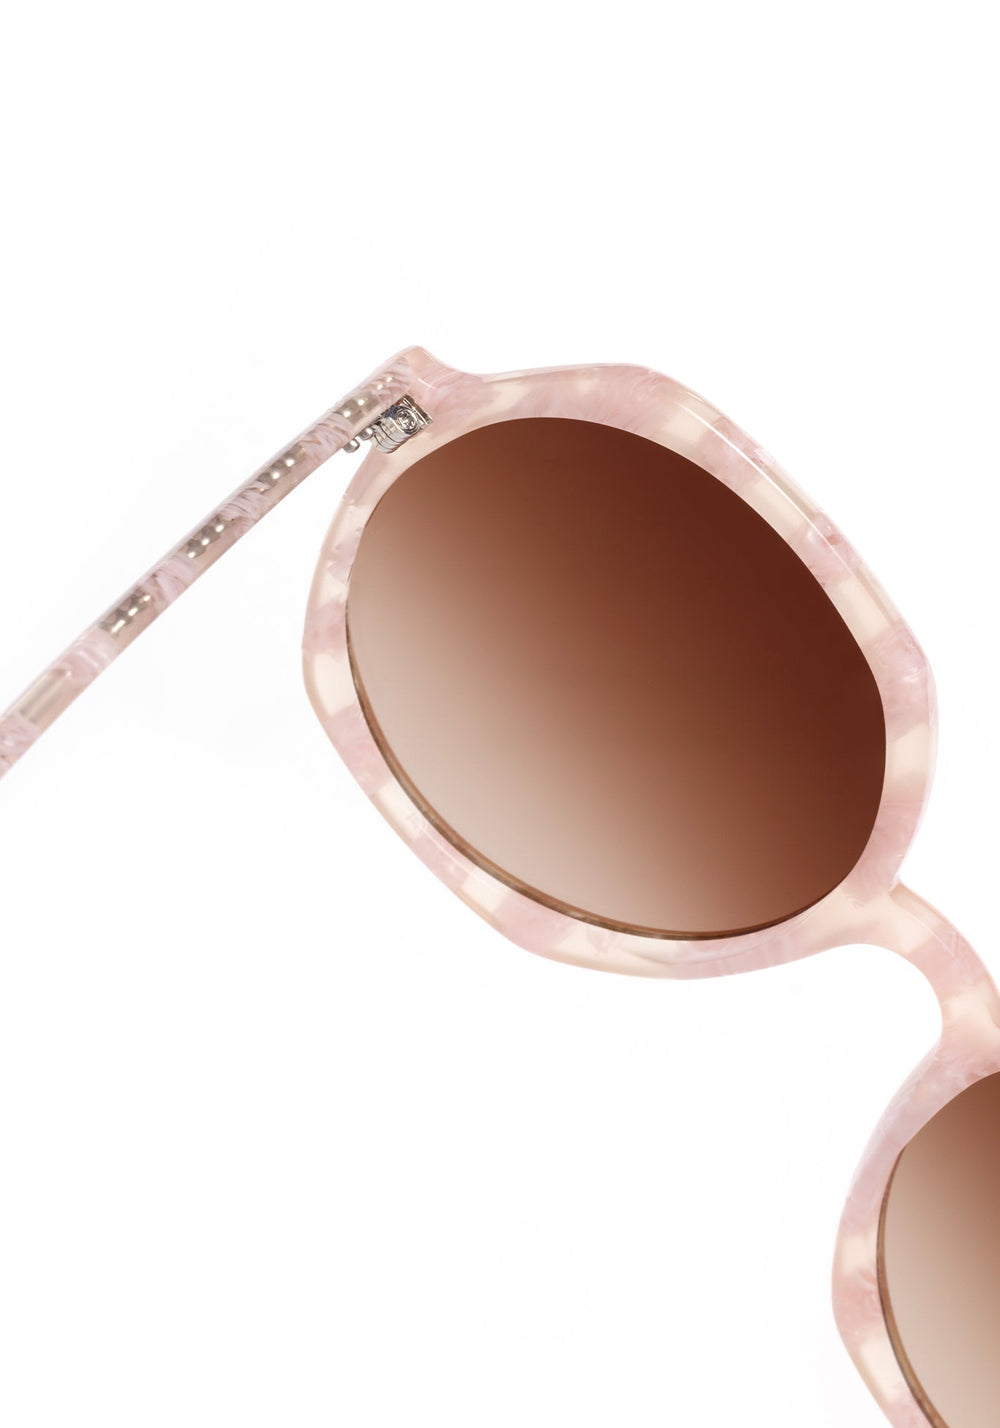 KREWE SUNGLASSES - SOPHIA | Plaid Mirrored handcrafted, luxury pink checkered oversized round women's sunglasses